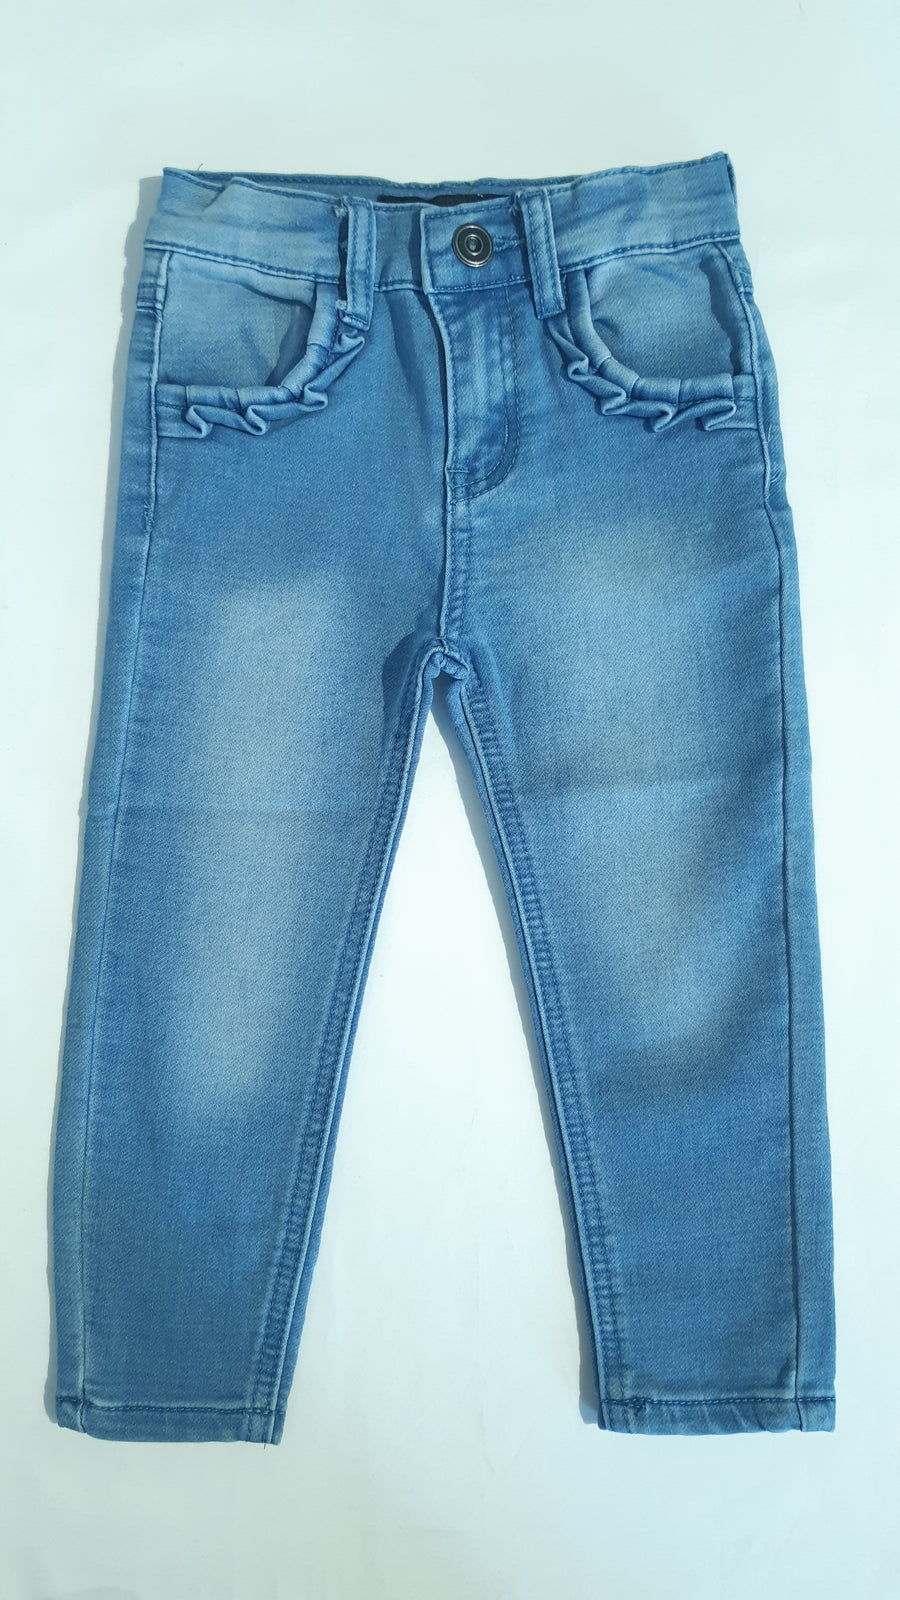 Skinny Jeans - Bleu pâle - Mandarine & Co.